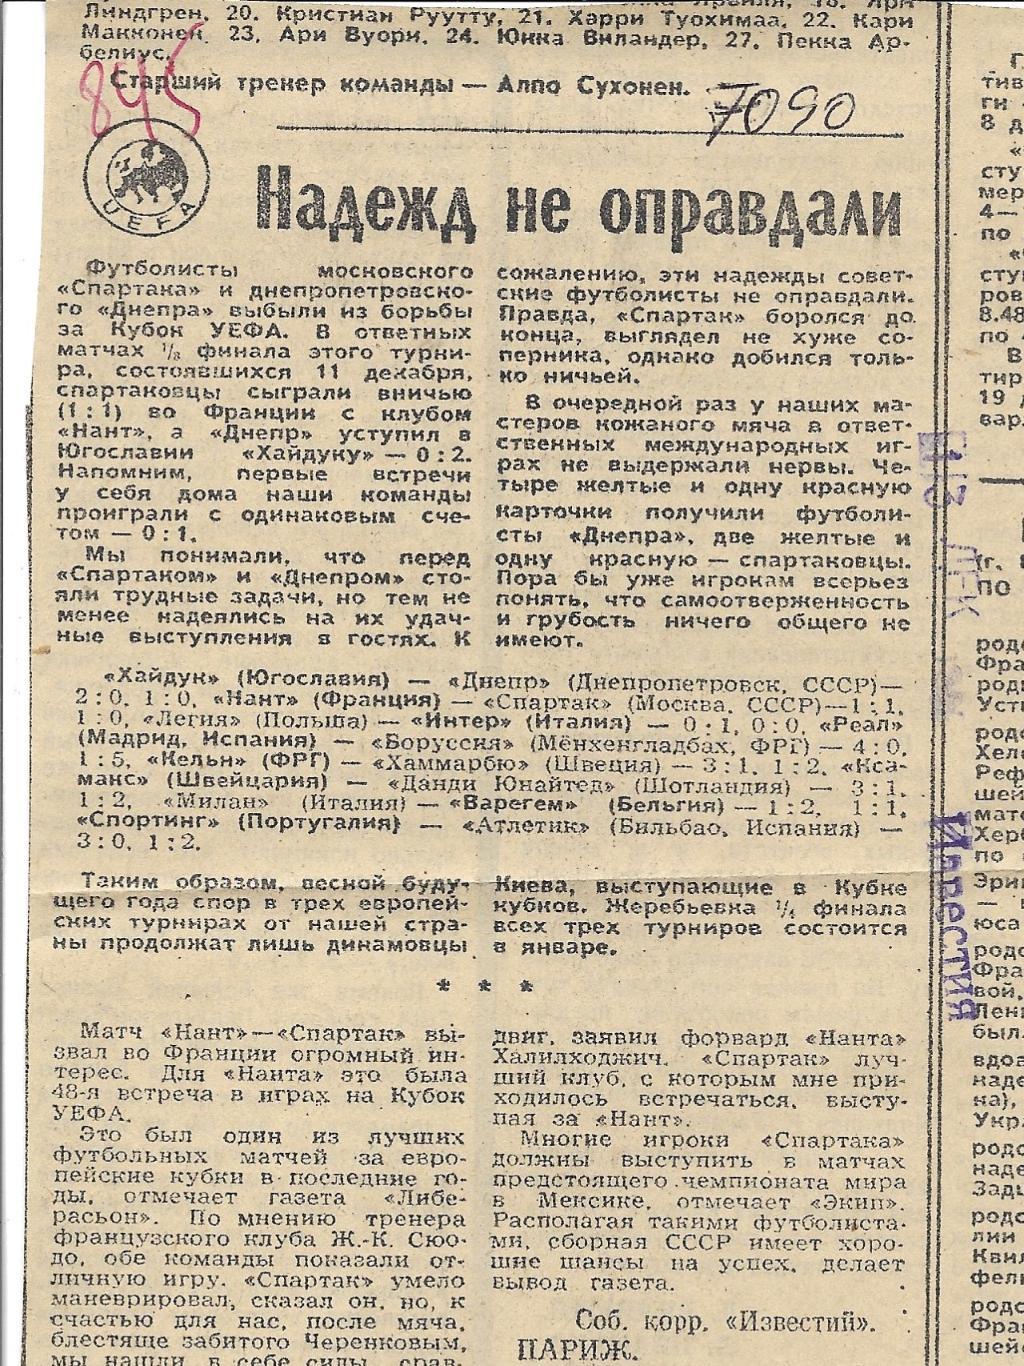 Обзор матчей_ЕВРО-Кубков._1985_(70 90)